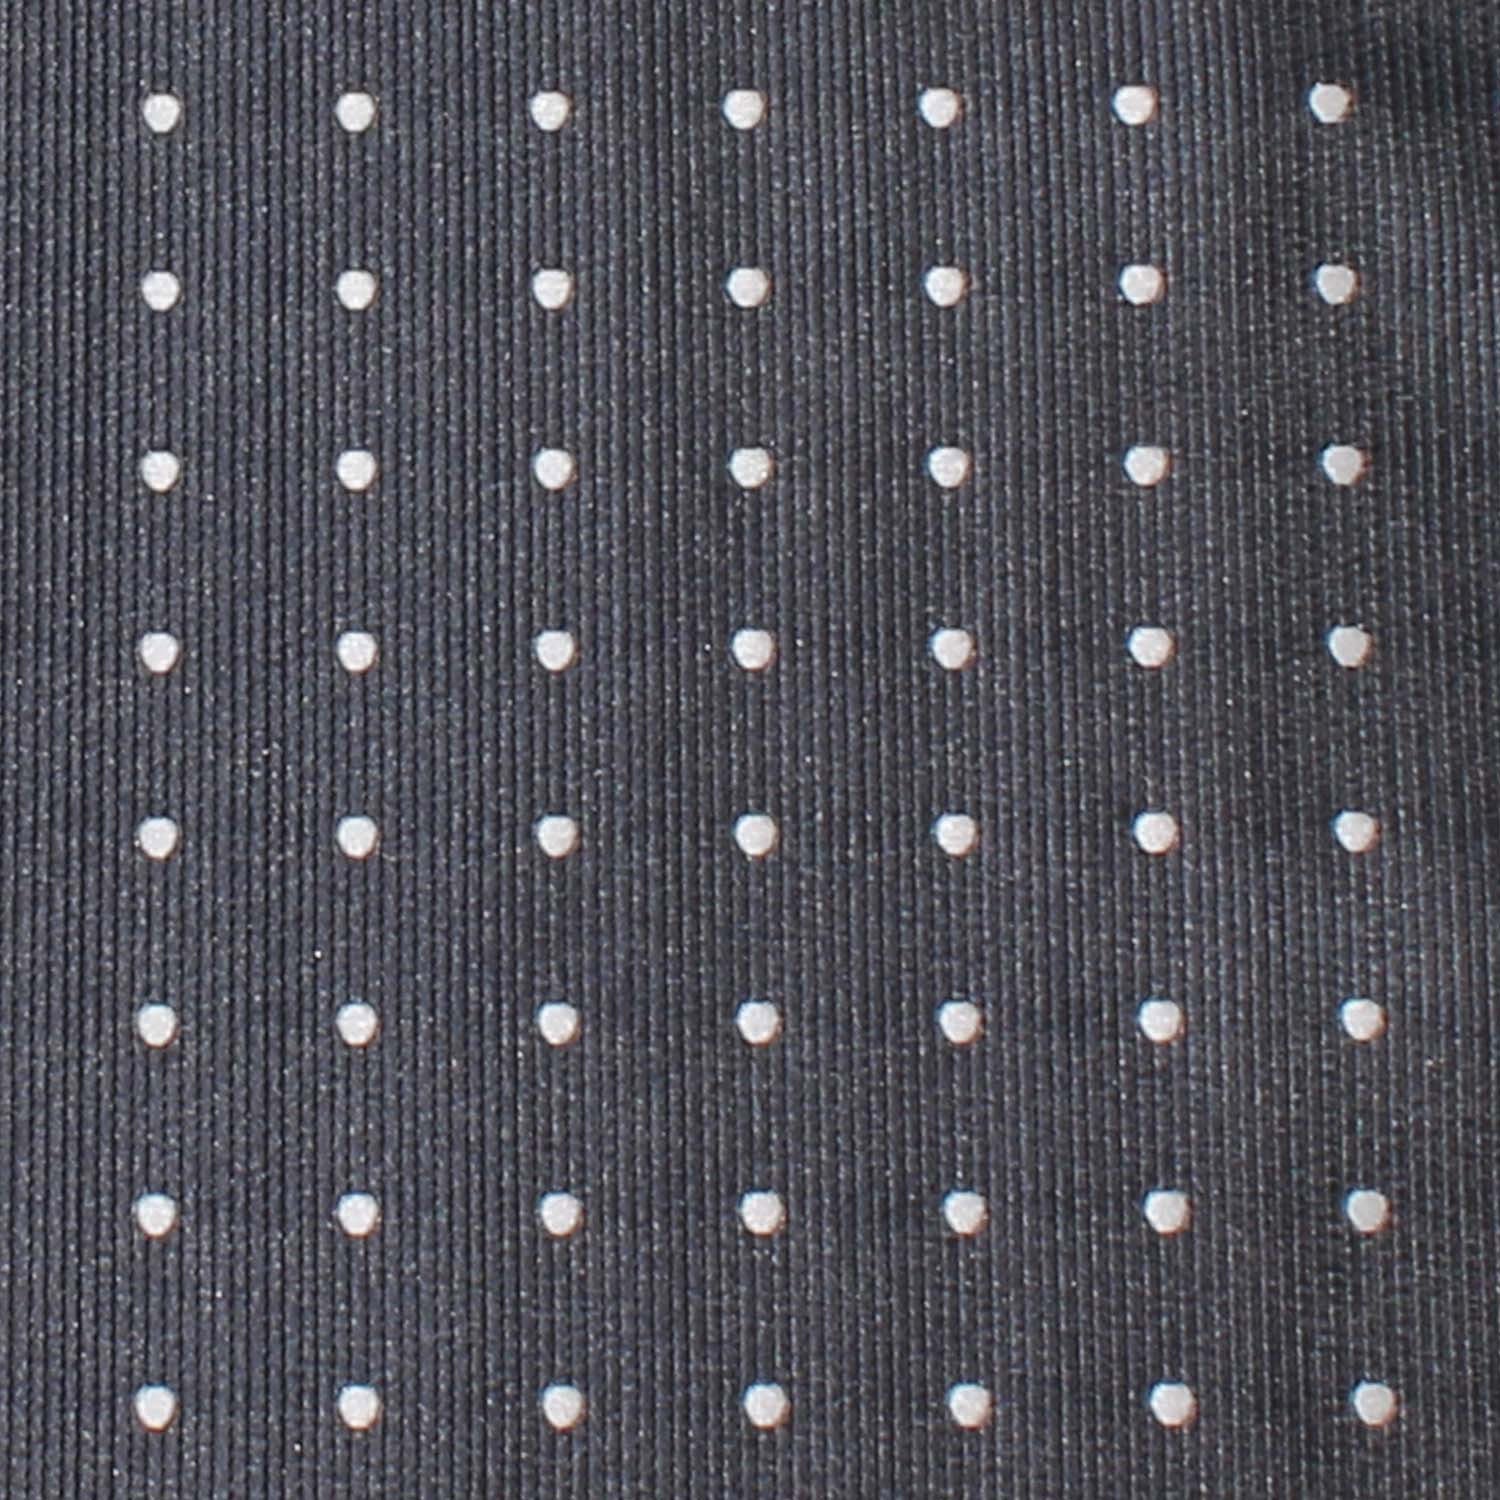 Charcoal Grey with White Polka Dots Necktie | Men's Suit Ties Online | OTAA